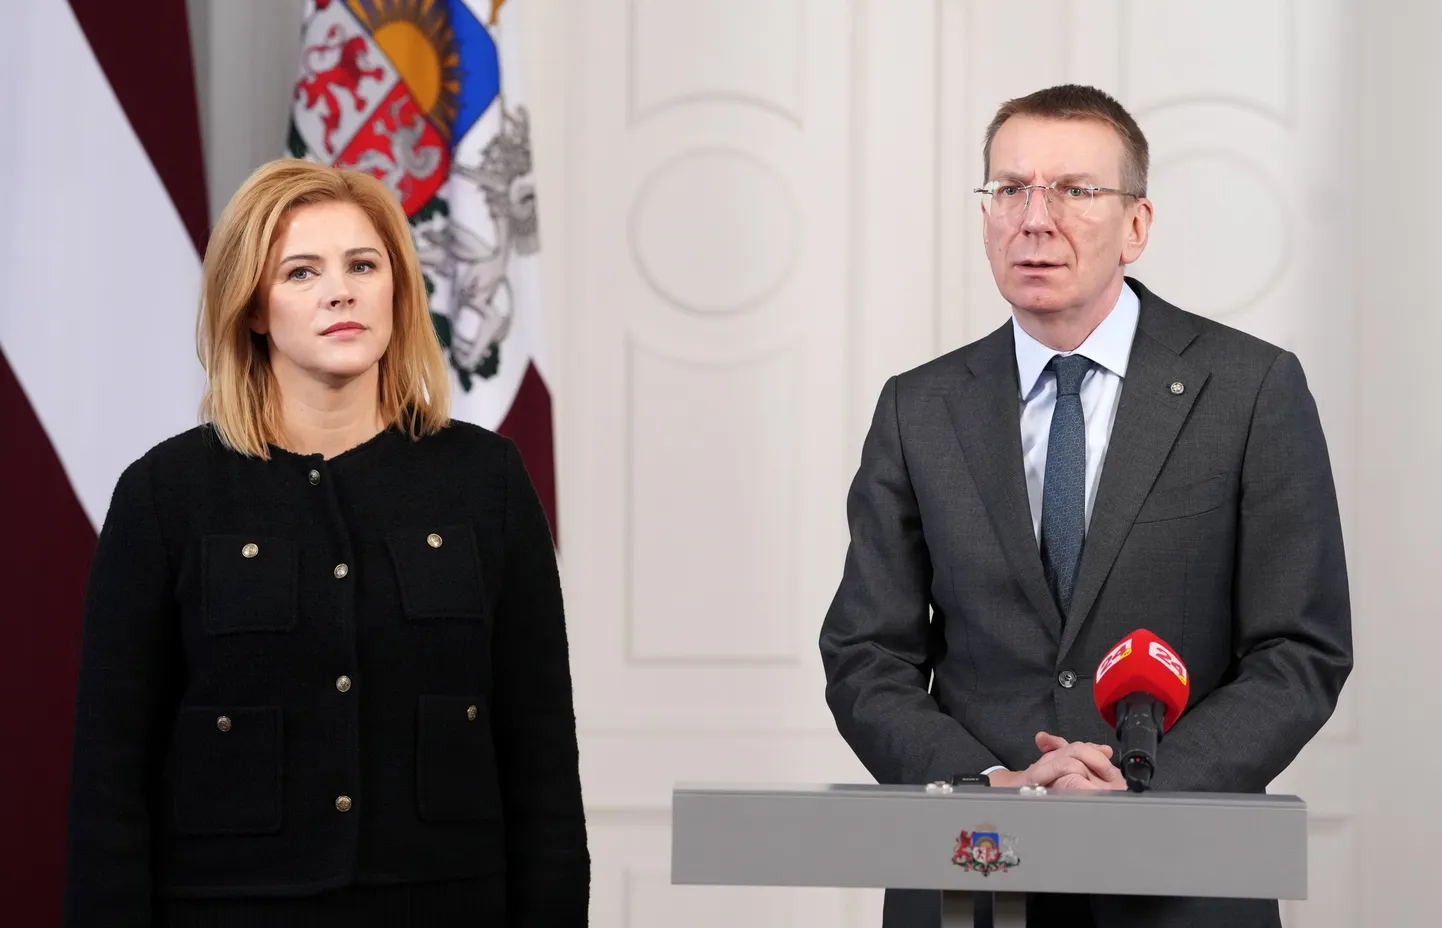 Valsts prezidents Edgars Rinkēvičs un Ministru prezidente Evika Siliņa piedalās preses brīfingā pēc tikšanās Rīgas pilī.